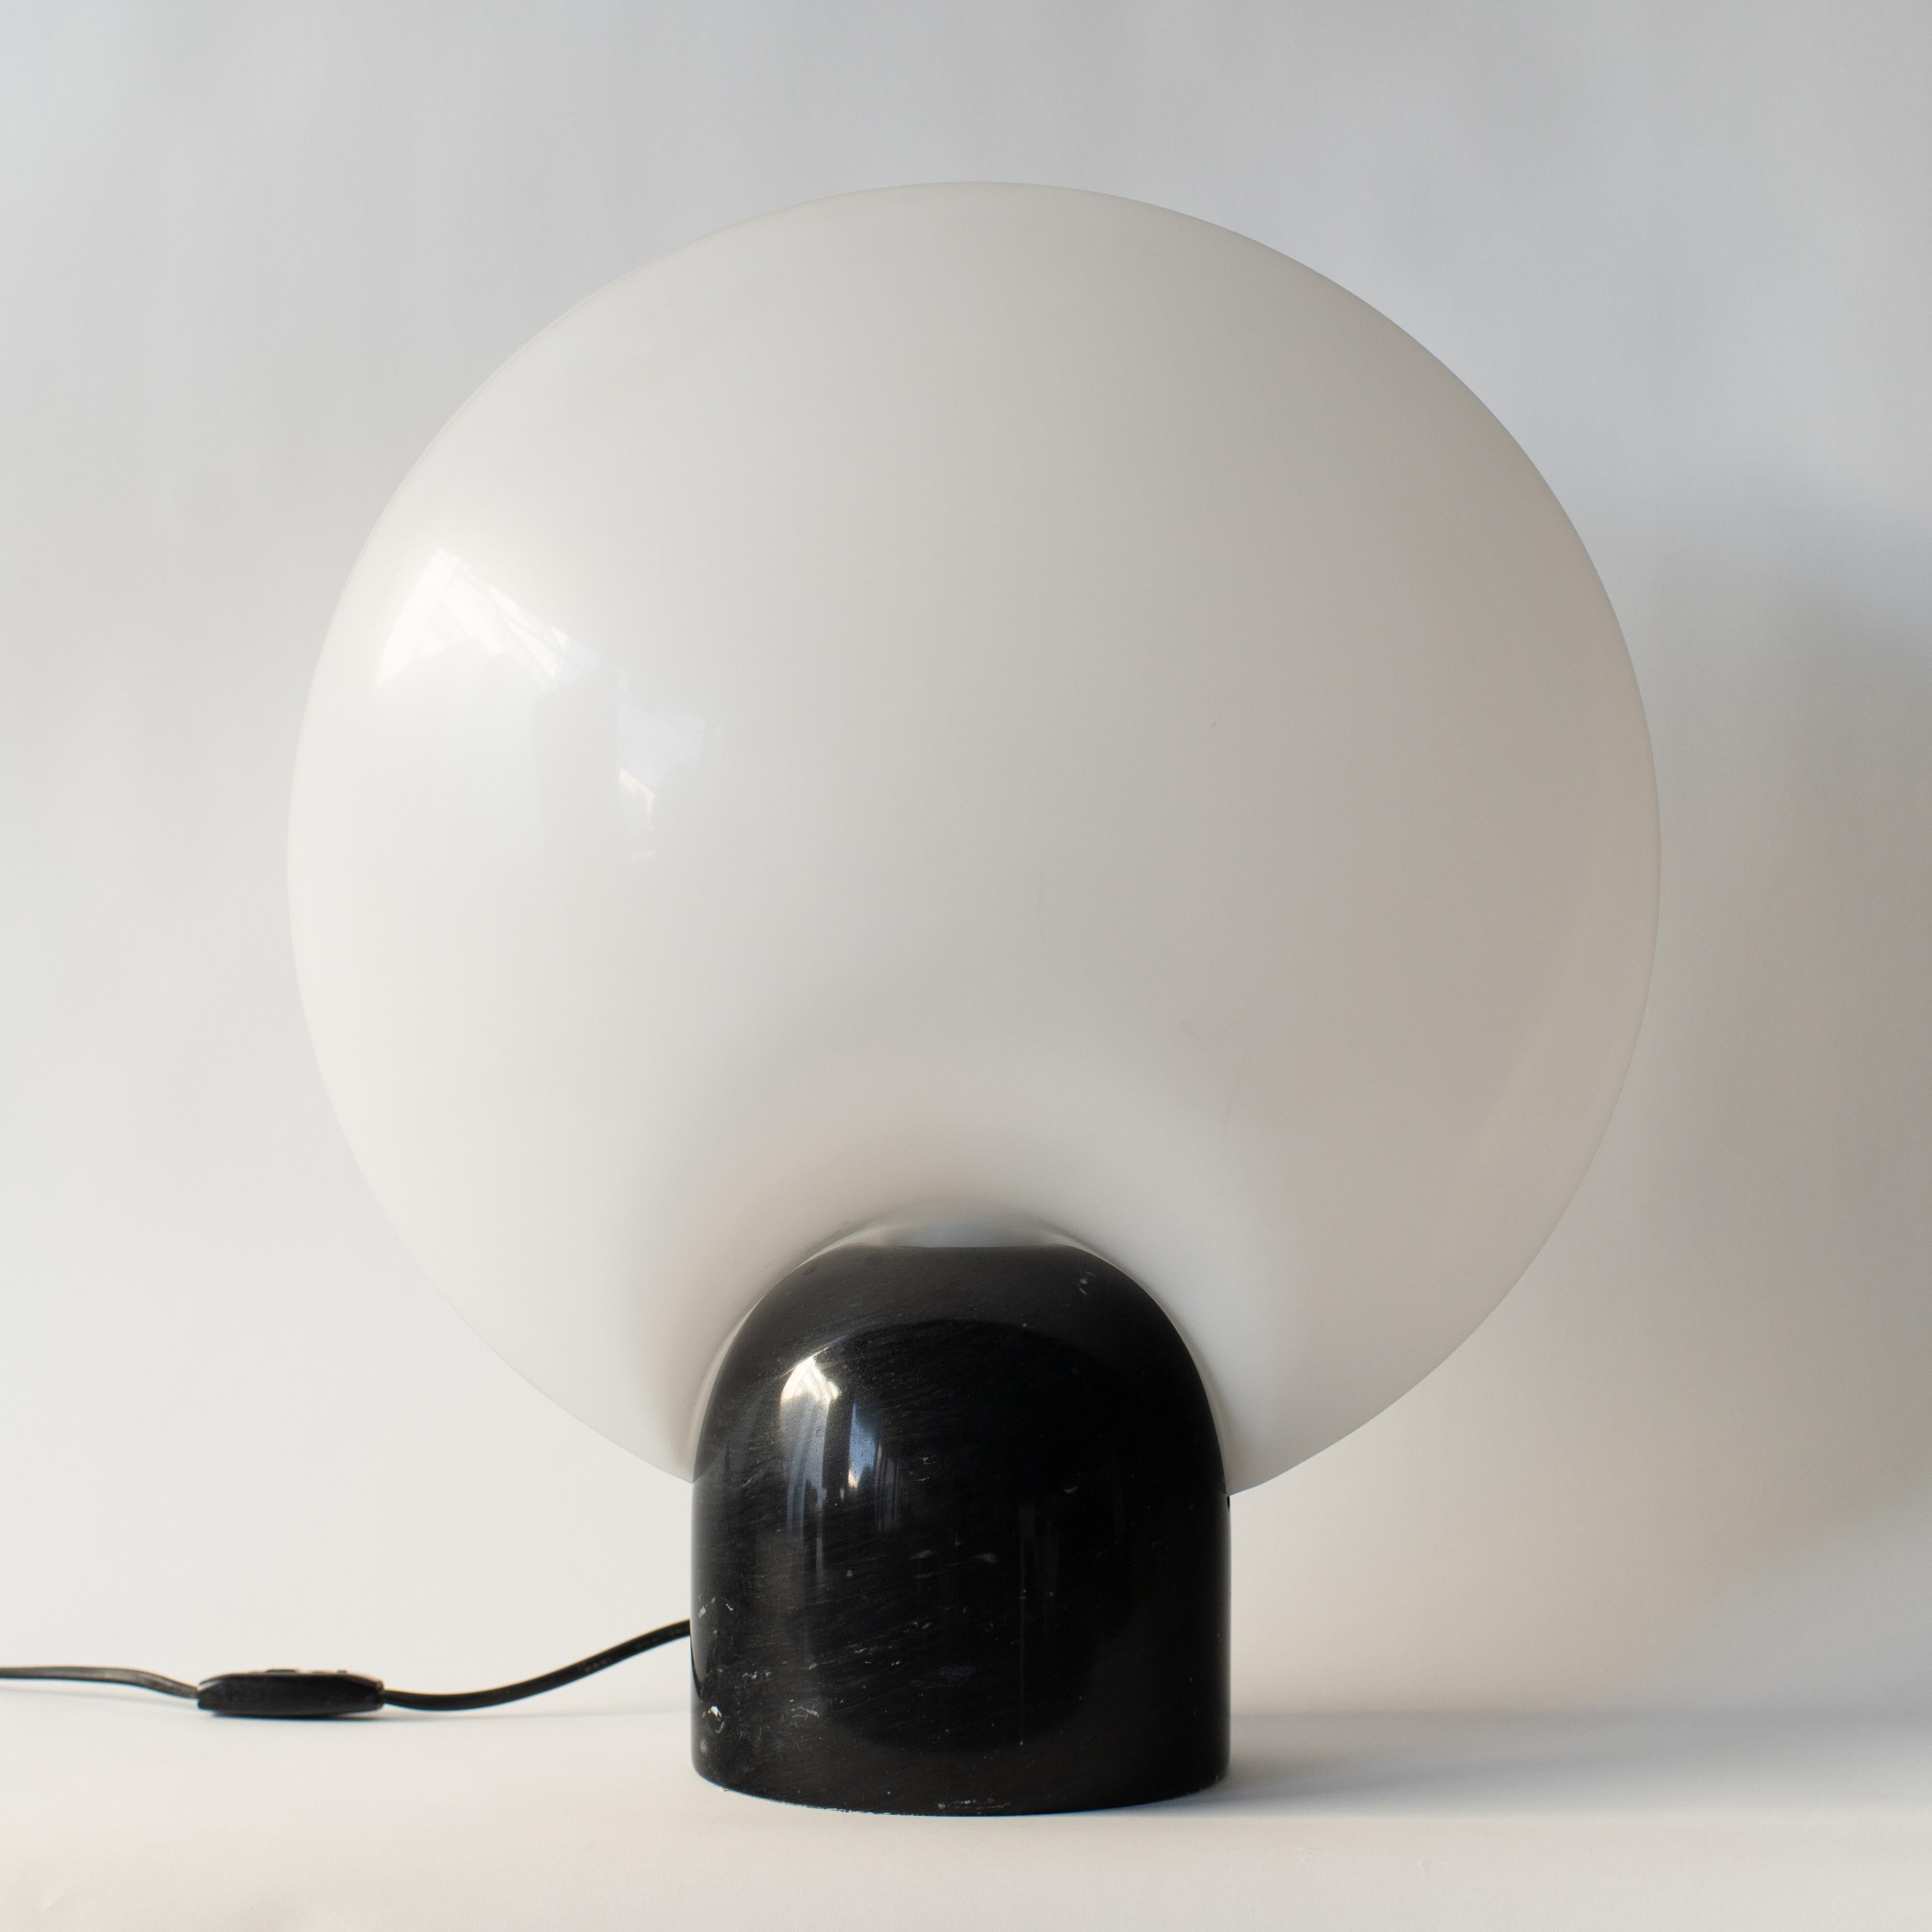 Lampe de table Conchiglia conçue par Yoshiyuki Hara pour Yamagiwa.
La base est en marbre noir, avec deux abat-jour blancs en plastique. 
E27 100W. 100-240V.
 